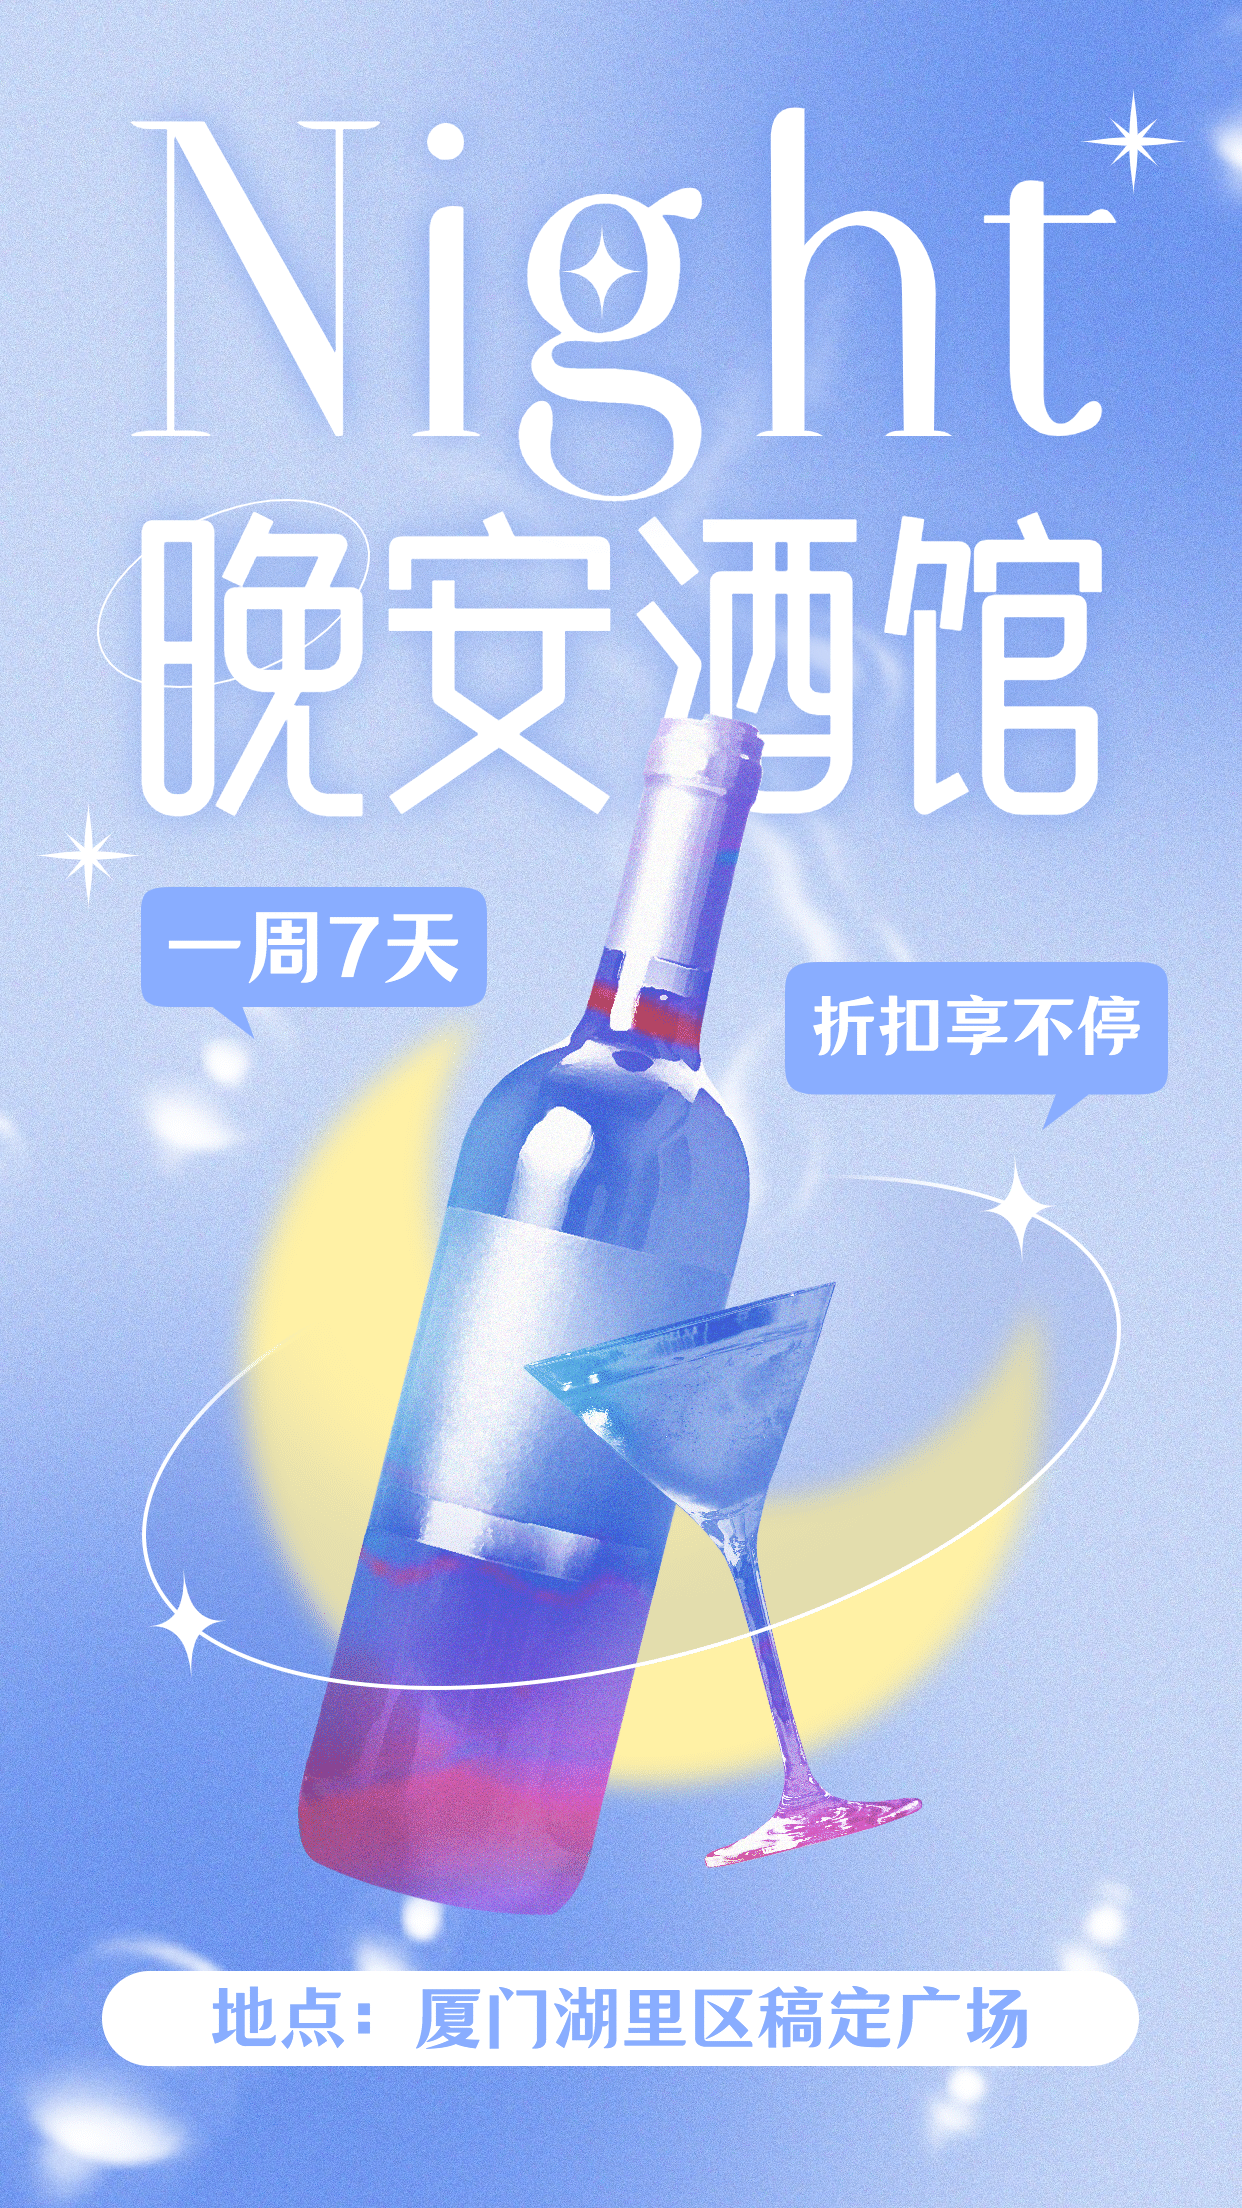 国庆节时尚潮酷风酒吧宣传海报